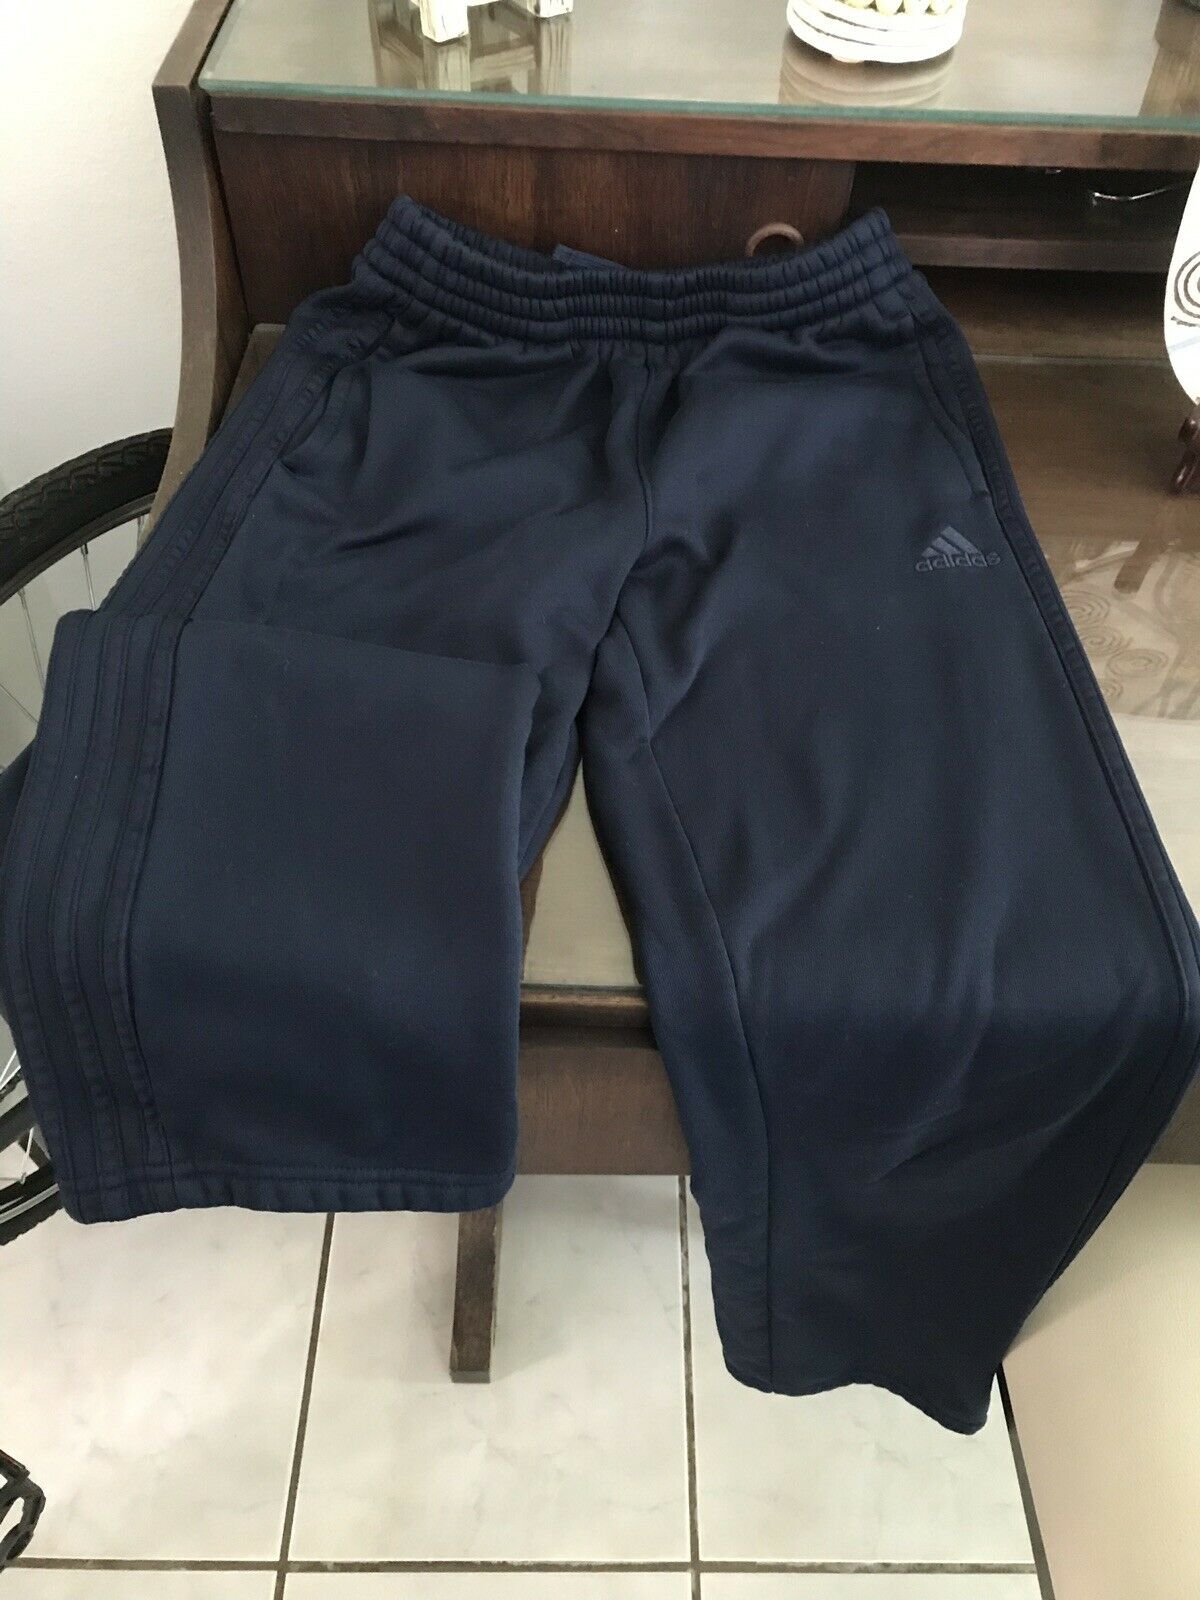 Adidas Long Sweatpants Youth Large 14-16 Dark Blue, Unisex - Euc